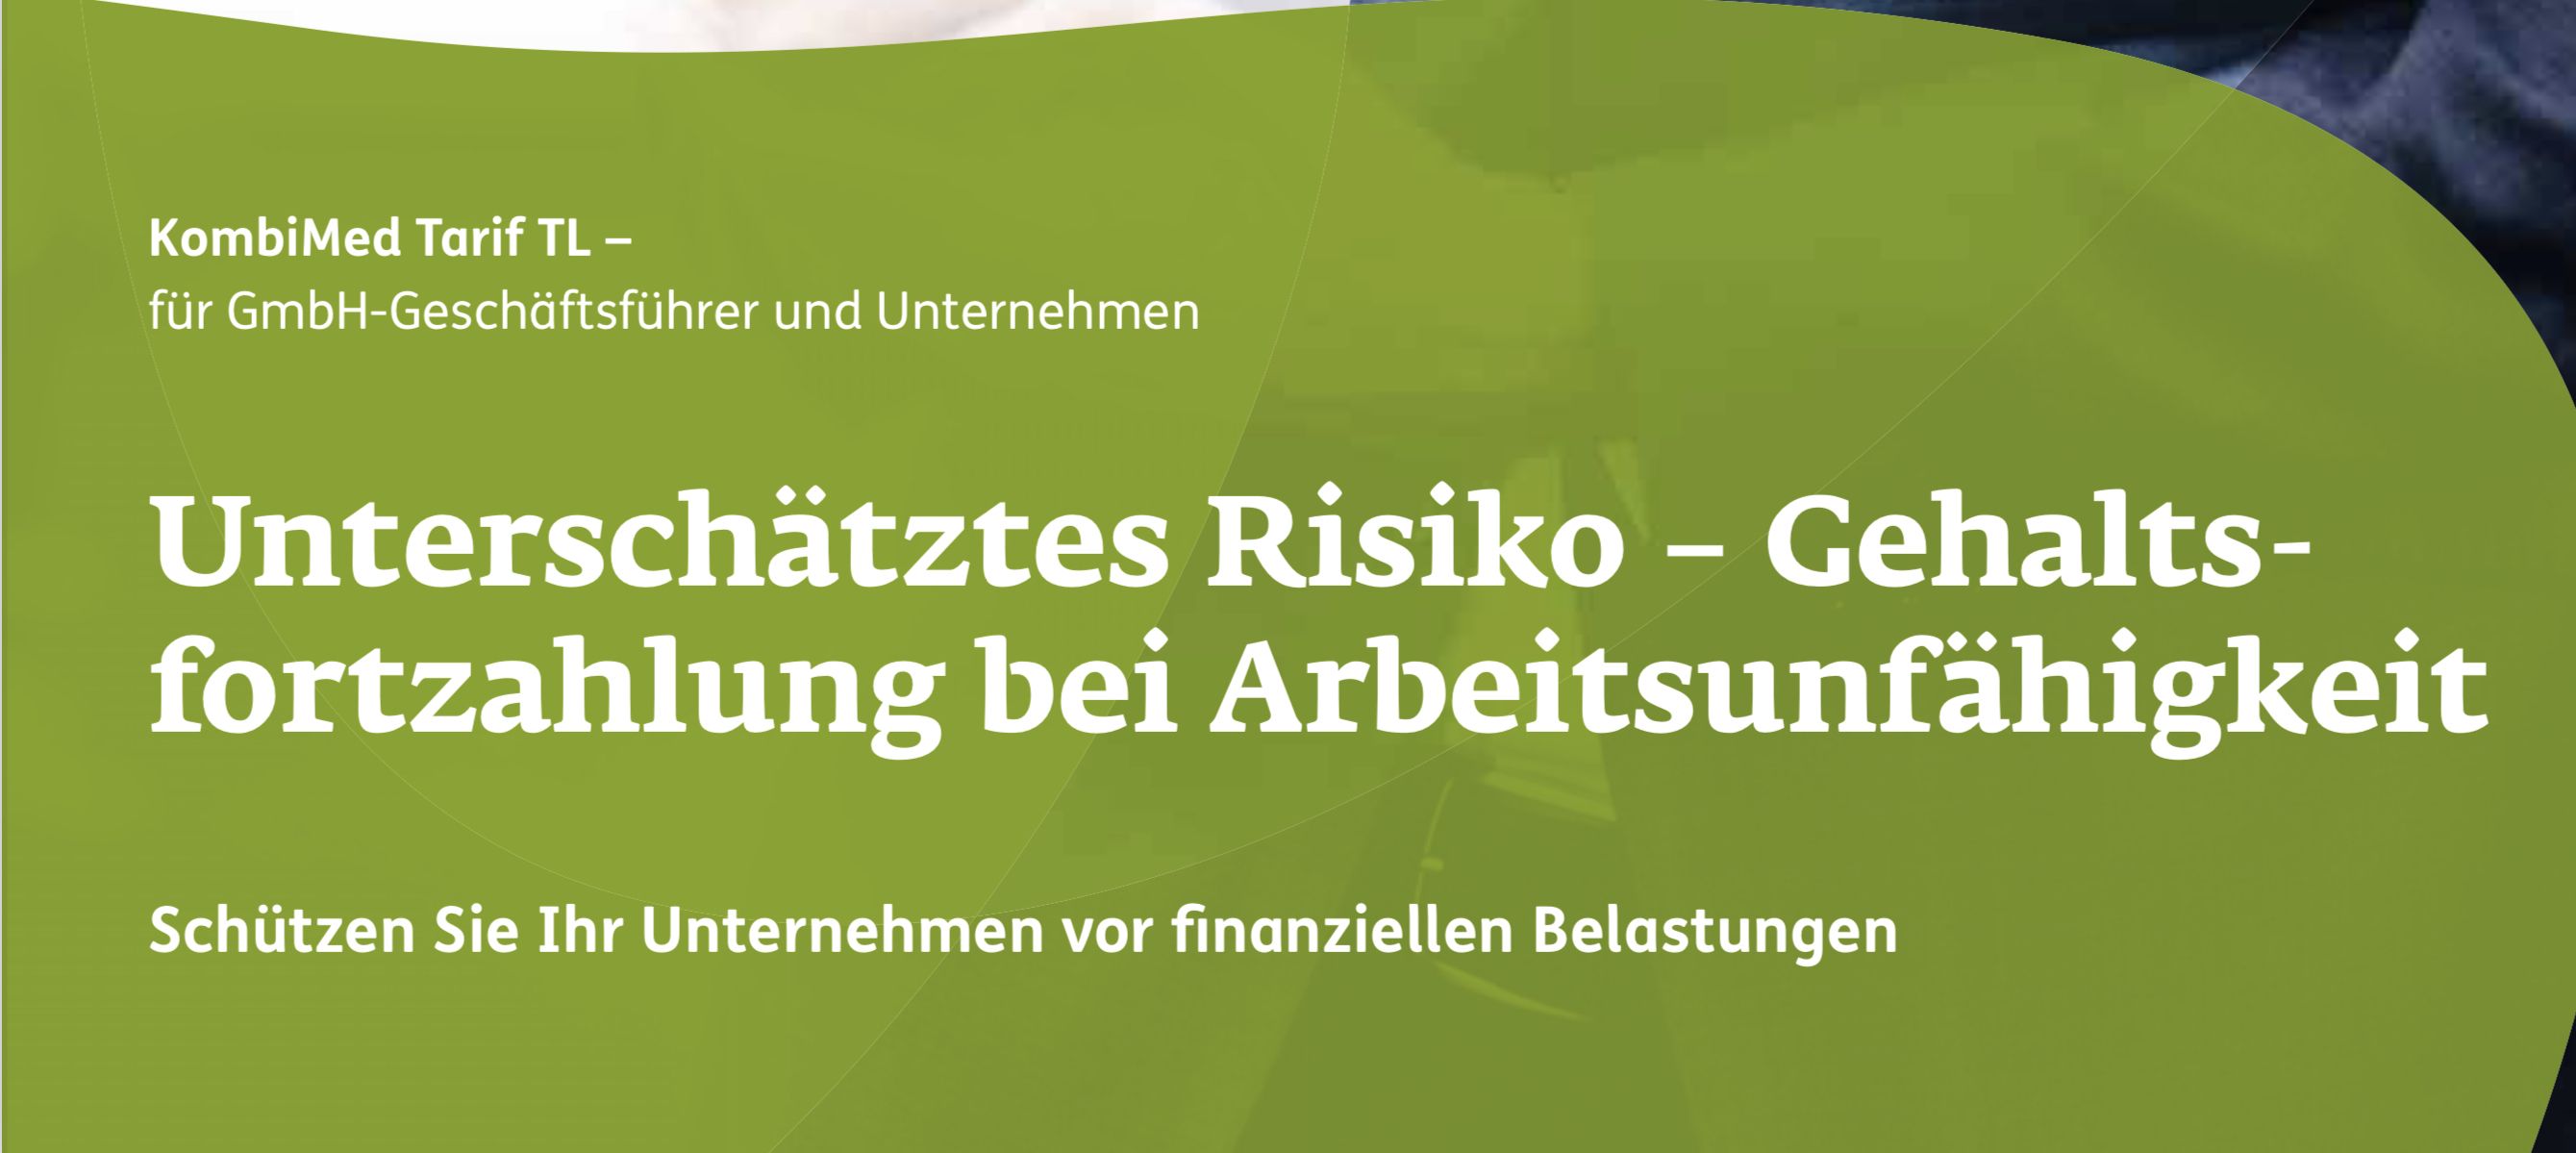 Risiko Gehaltsfortzahlung GmbH Geschäftsführer bei Arbeitsunfähigkeit